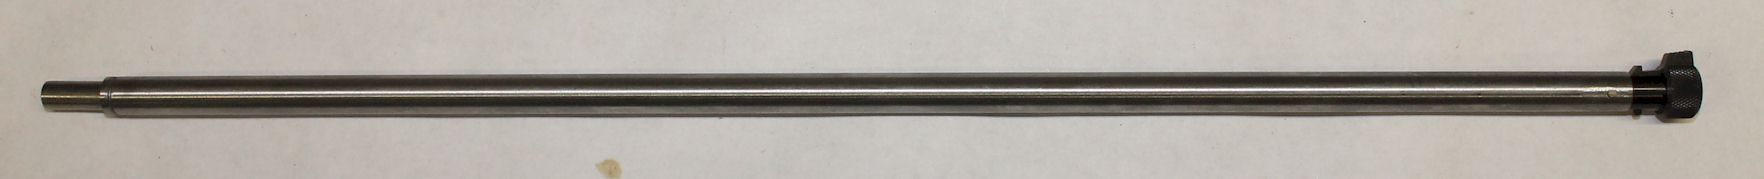 Magazine tube - INNER- Remington model 12 ROUND barrel